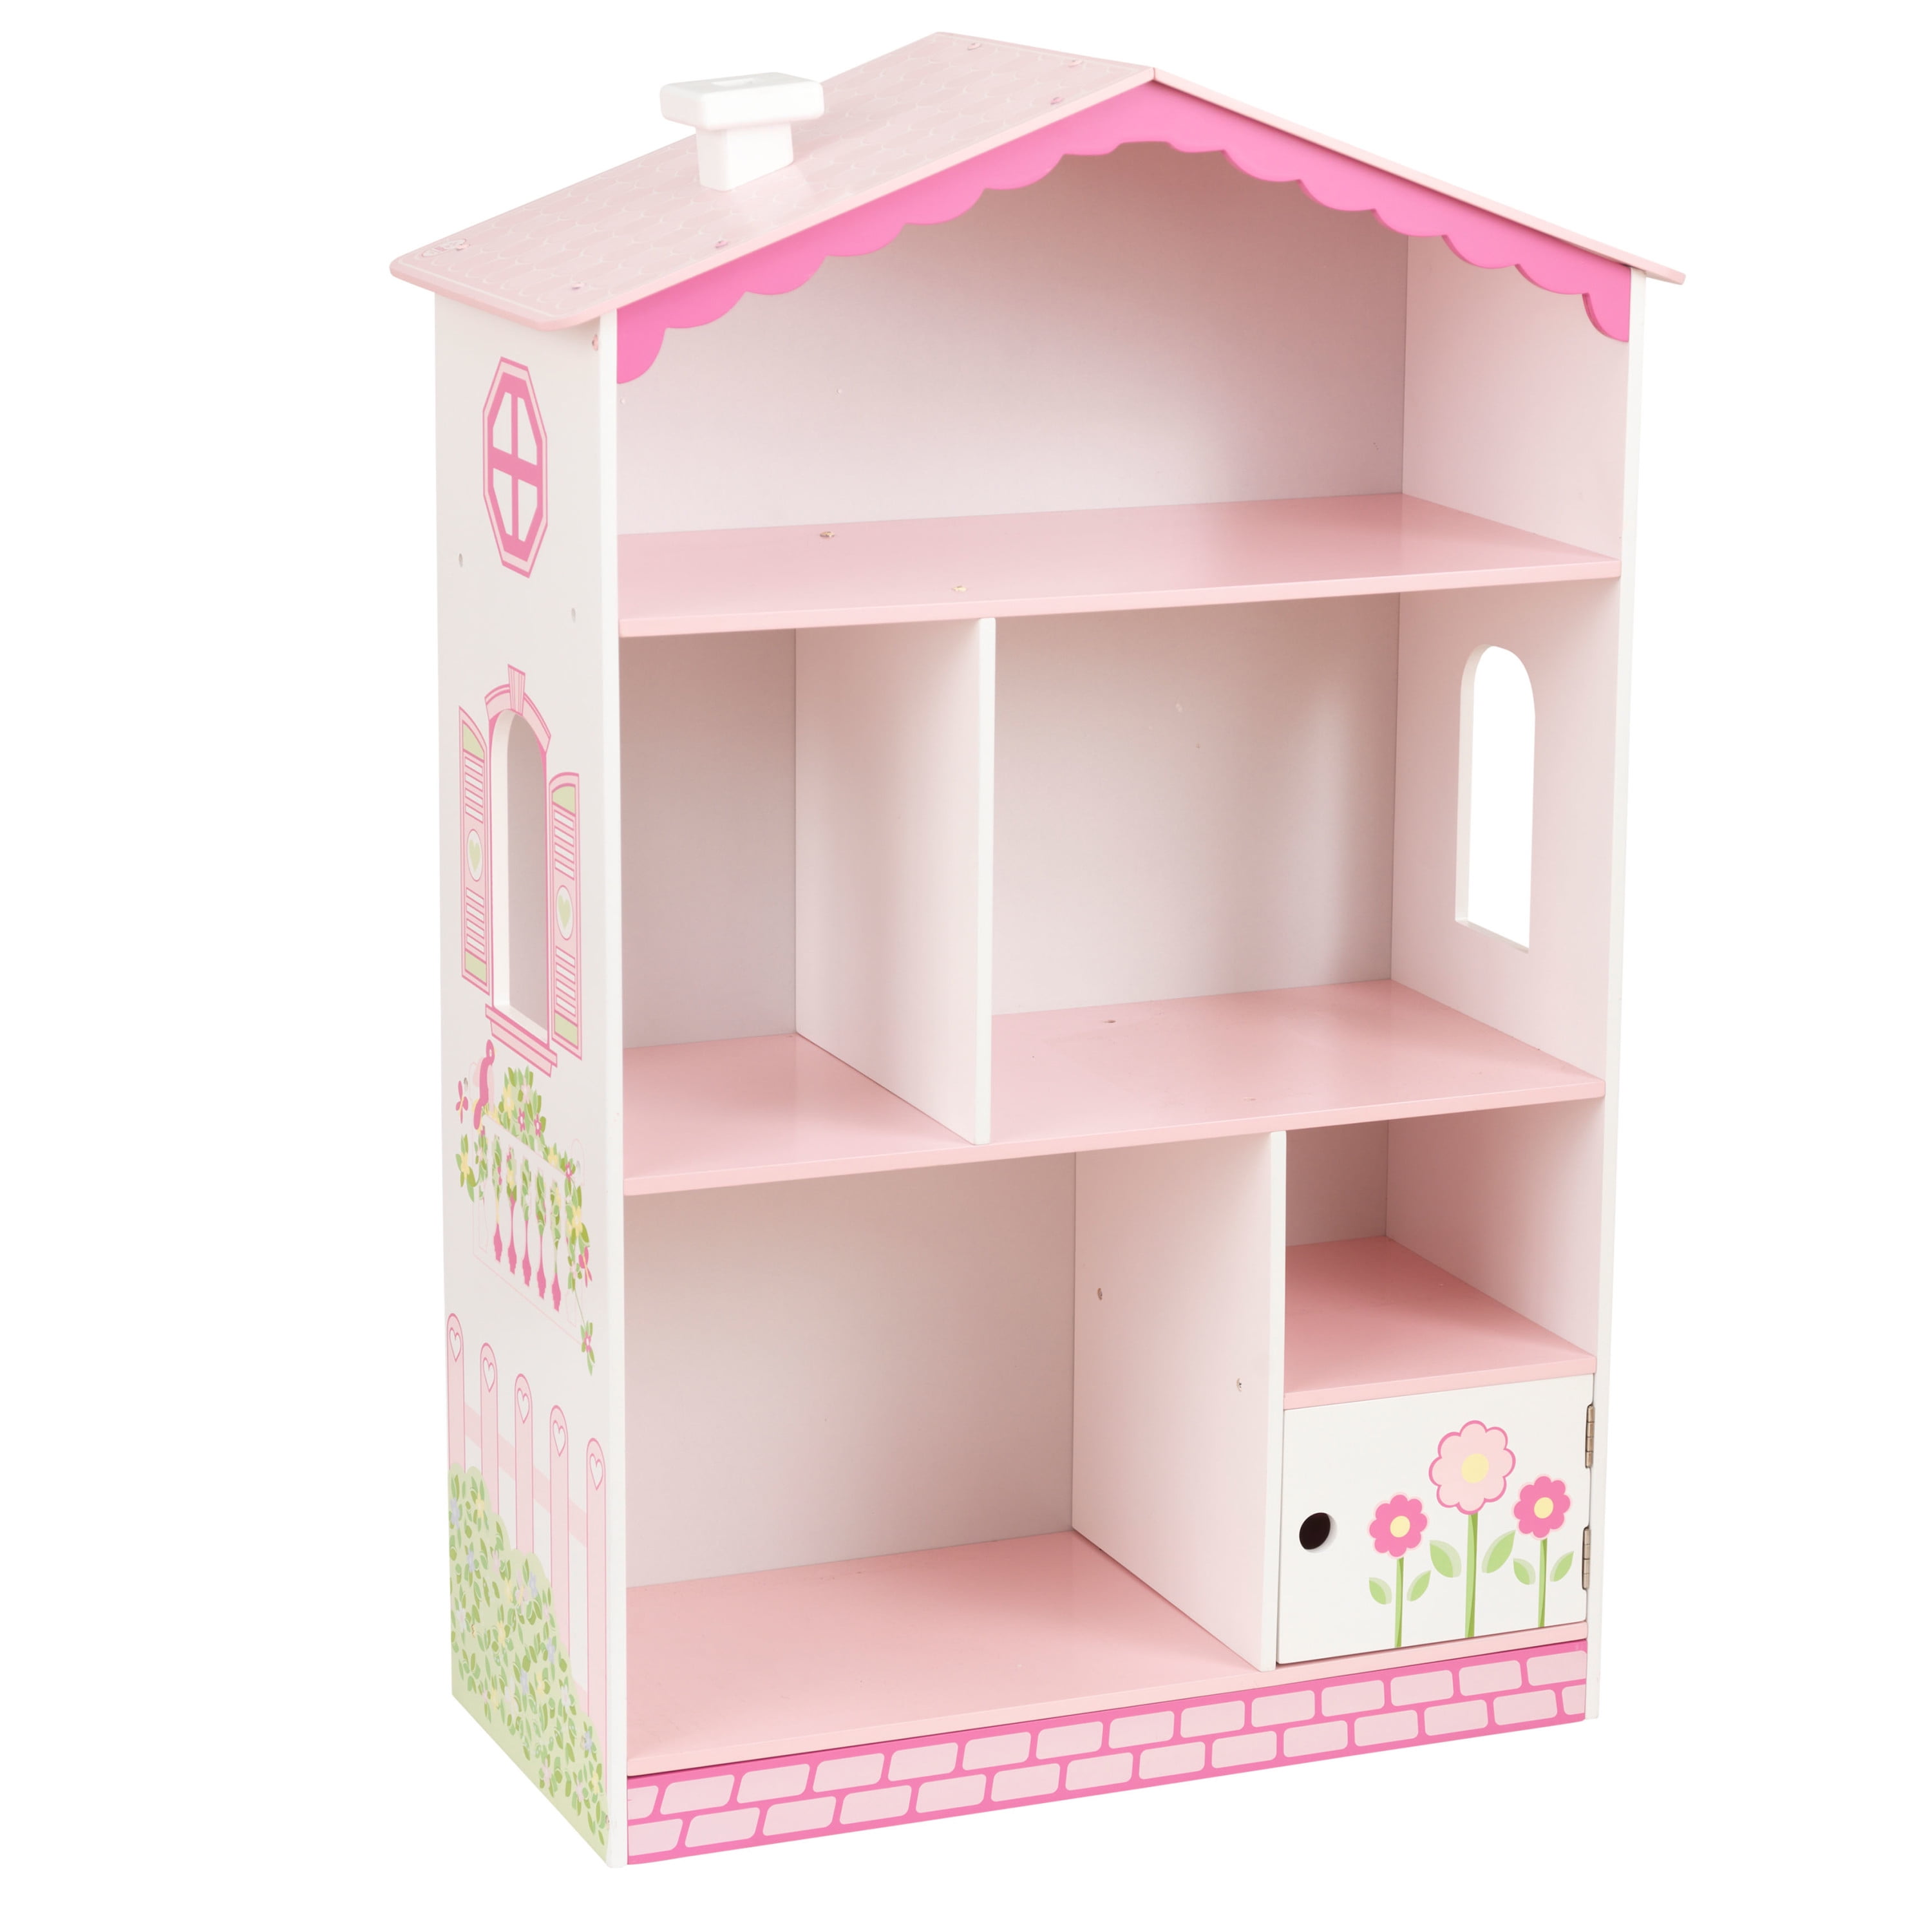 Dolls House Miniature Large White Shop Shelving Unit Furniture Shelf 